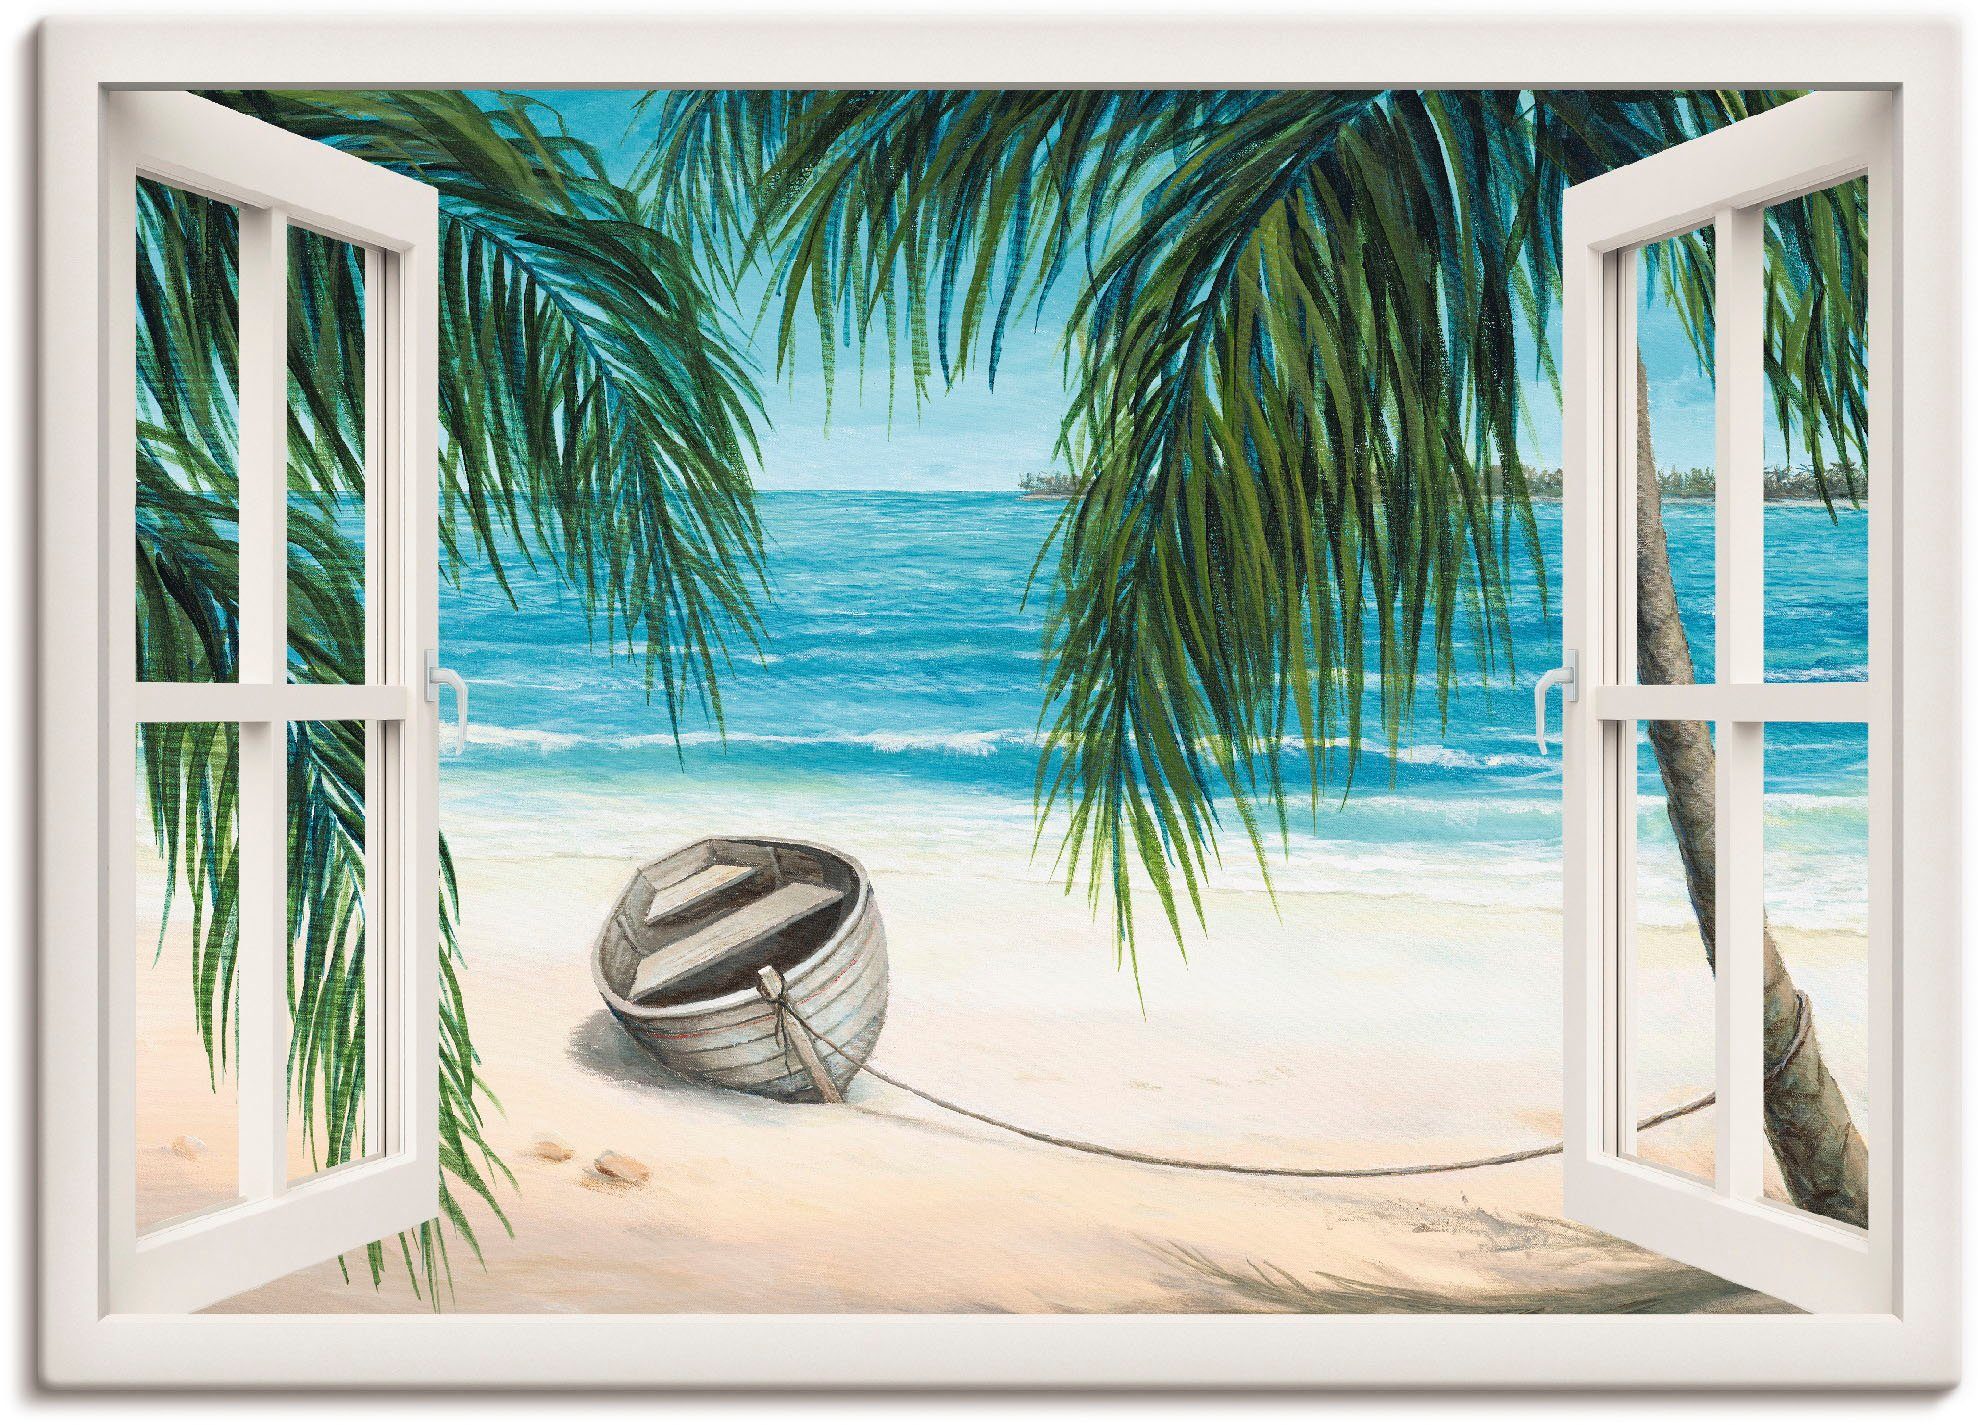 Artland Artprint Blik uit het venster - Caribic in vele afmetingen & productsoorten -artprint op linnen, poster, muursticker / wandfolie ook geschikt voor de badkamer (1 stuk)